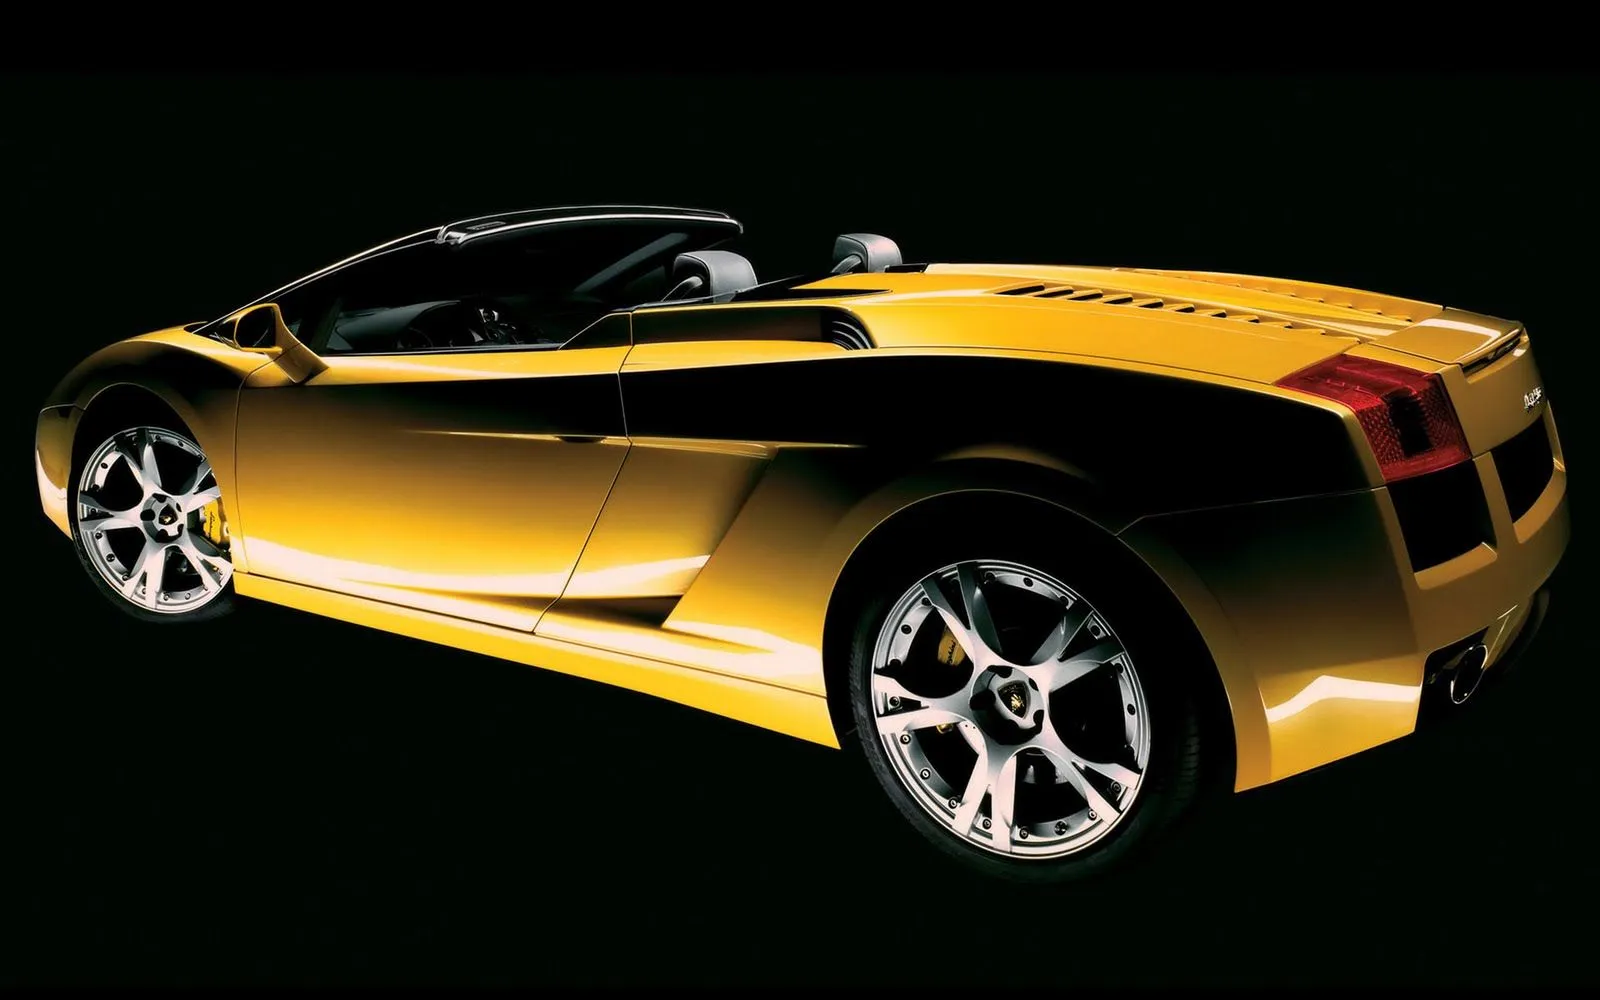 Foto Bazar: wallpaper Lamborghini amarillo (1) - coches ...